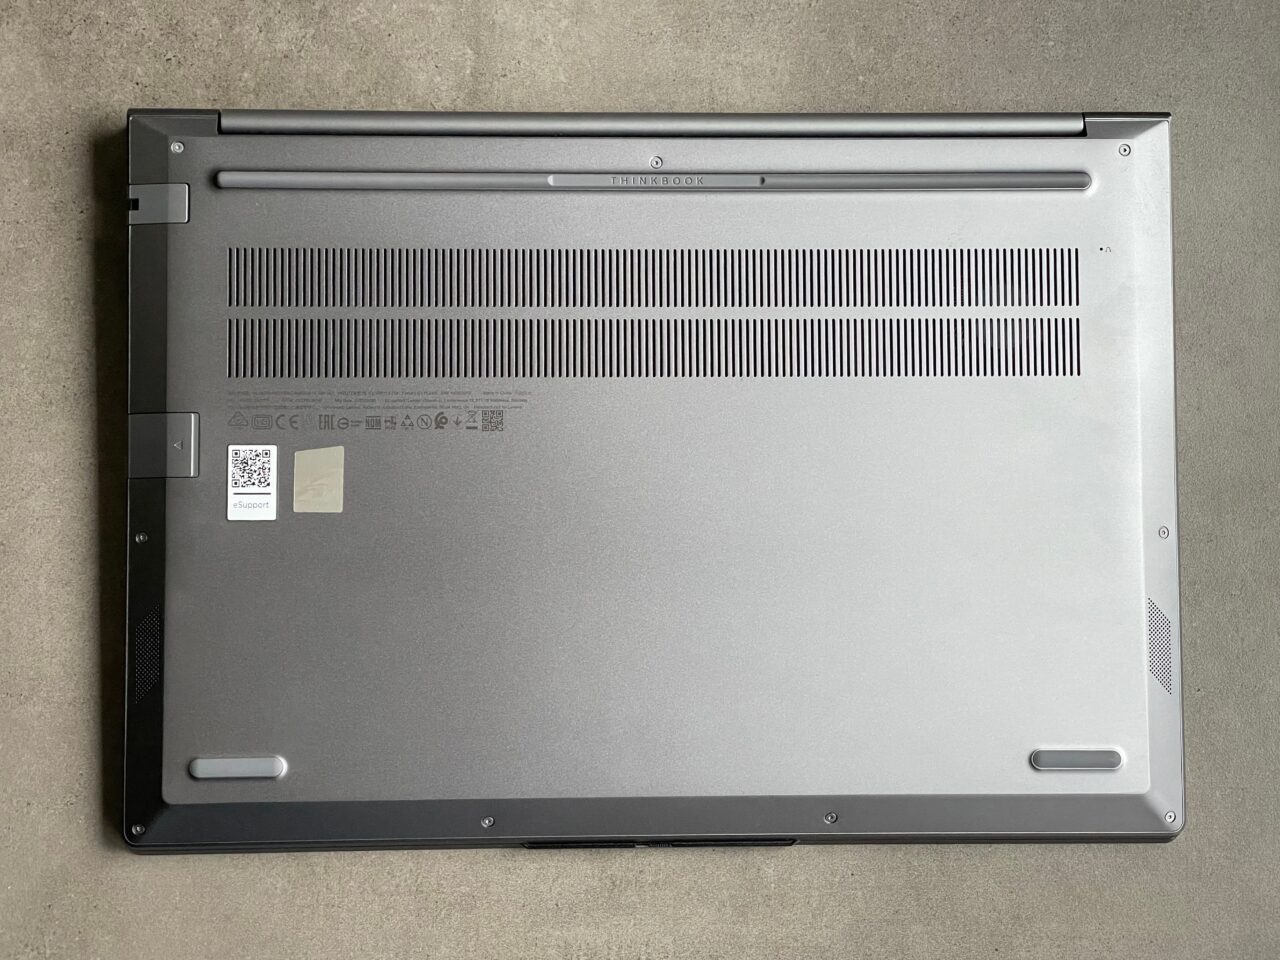 Spód laptopa umieszczonego na szarym tle, z widocznymi otworami wentylacyjnymi, śrubami, naklejkami z informacjami i numerem seryjnym oraz gumowymi nóżkami.